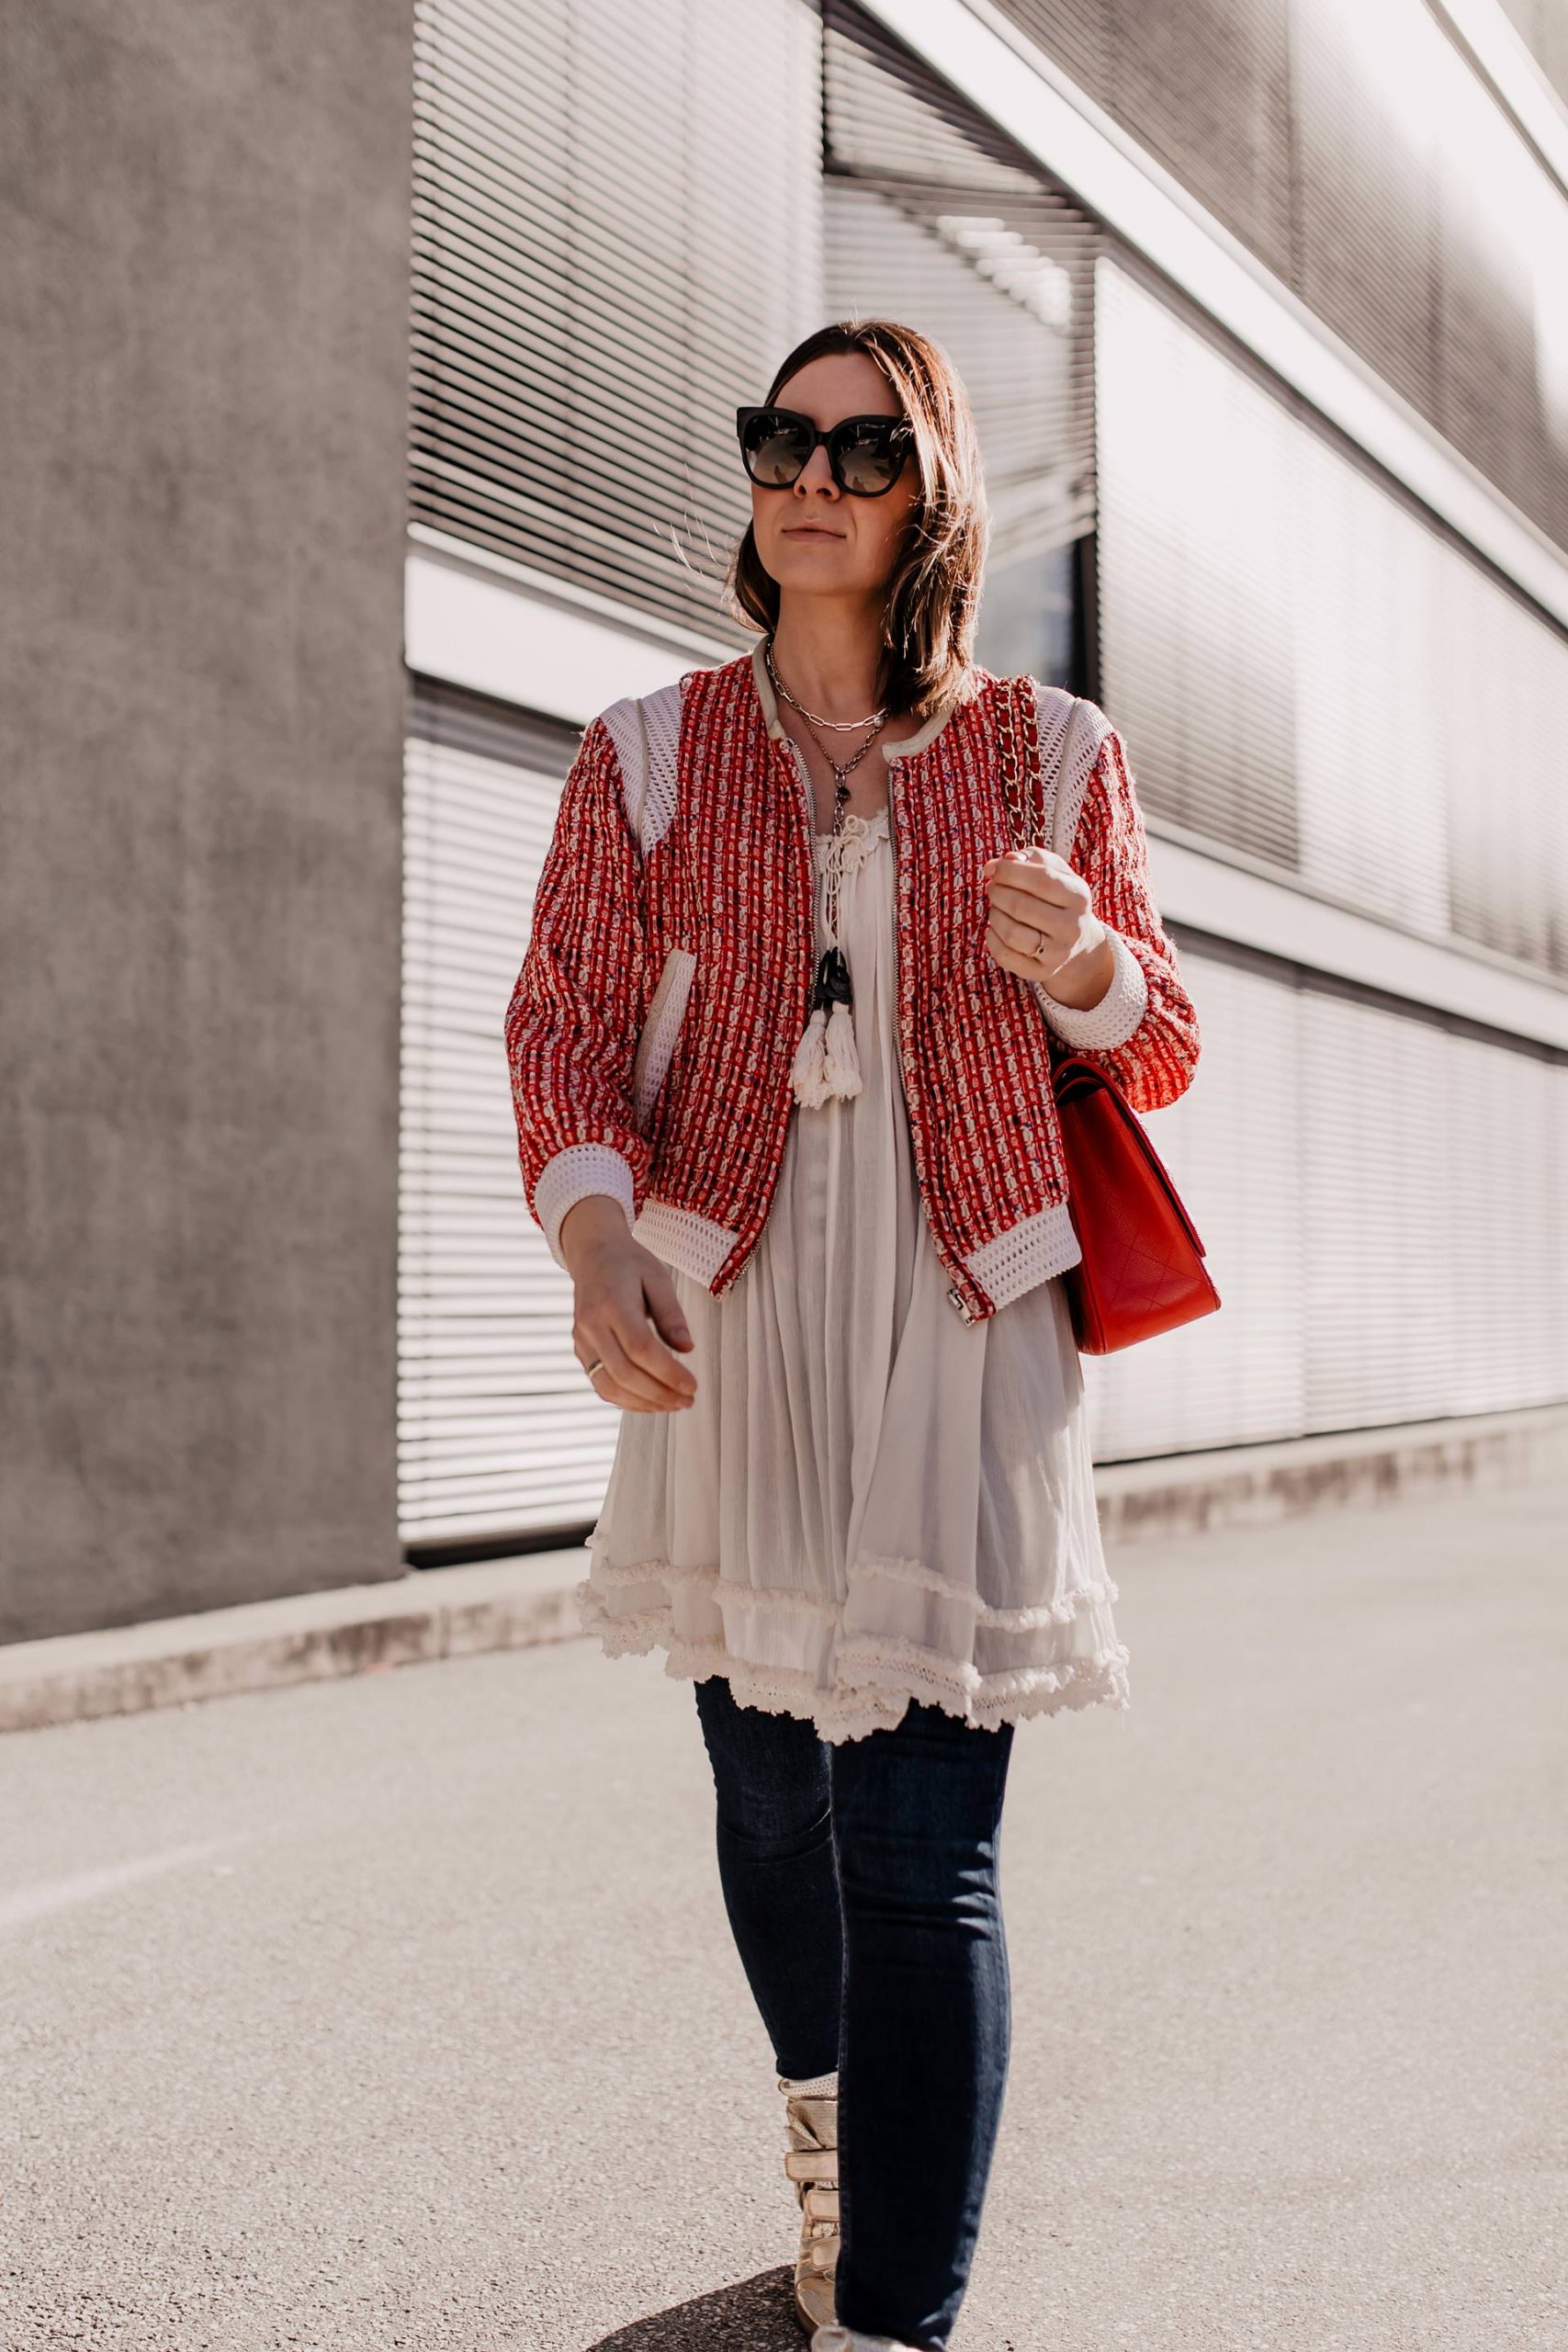 Du möchtest deine Tunika kombinieren und suchst noch nach den passenden Outfit-Inspirationen? Genau dafür ist mein Modeblog da. Ich zeige dir ein alltagstaugliches Frühlingsoutfit mit einem wunderschönen Hängerkleid. www.whoismocca.com #tunika #frühlingsoutfit